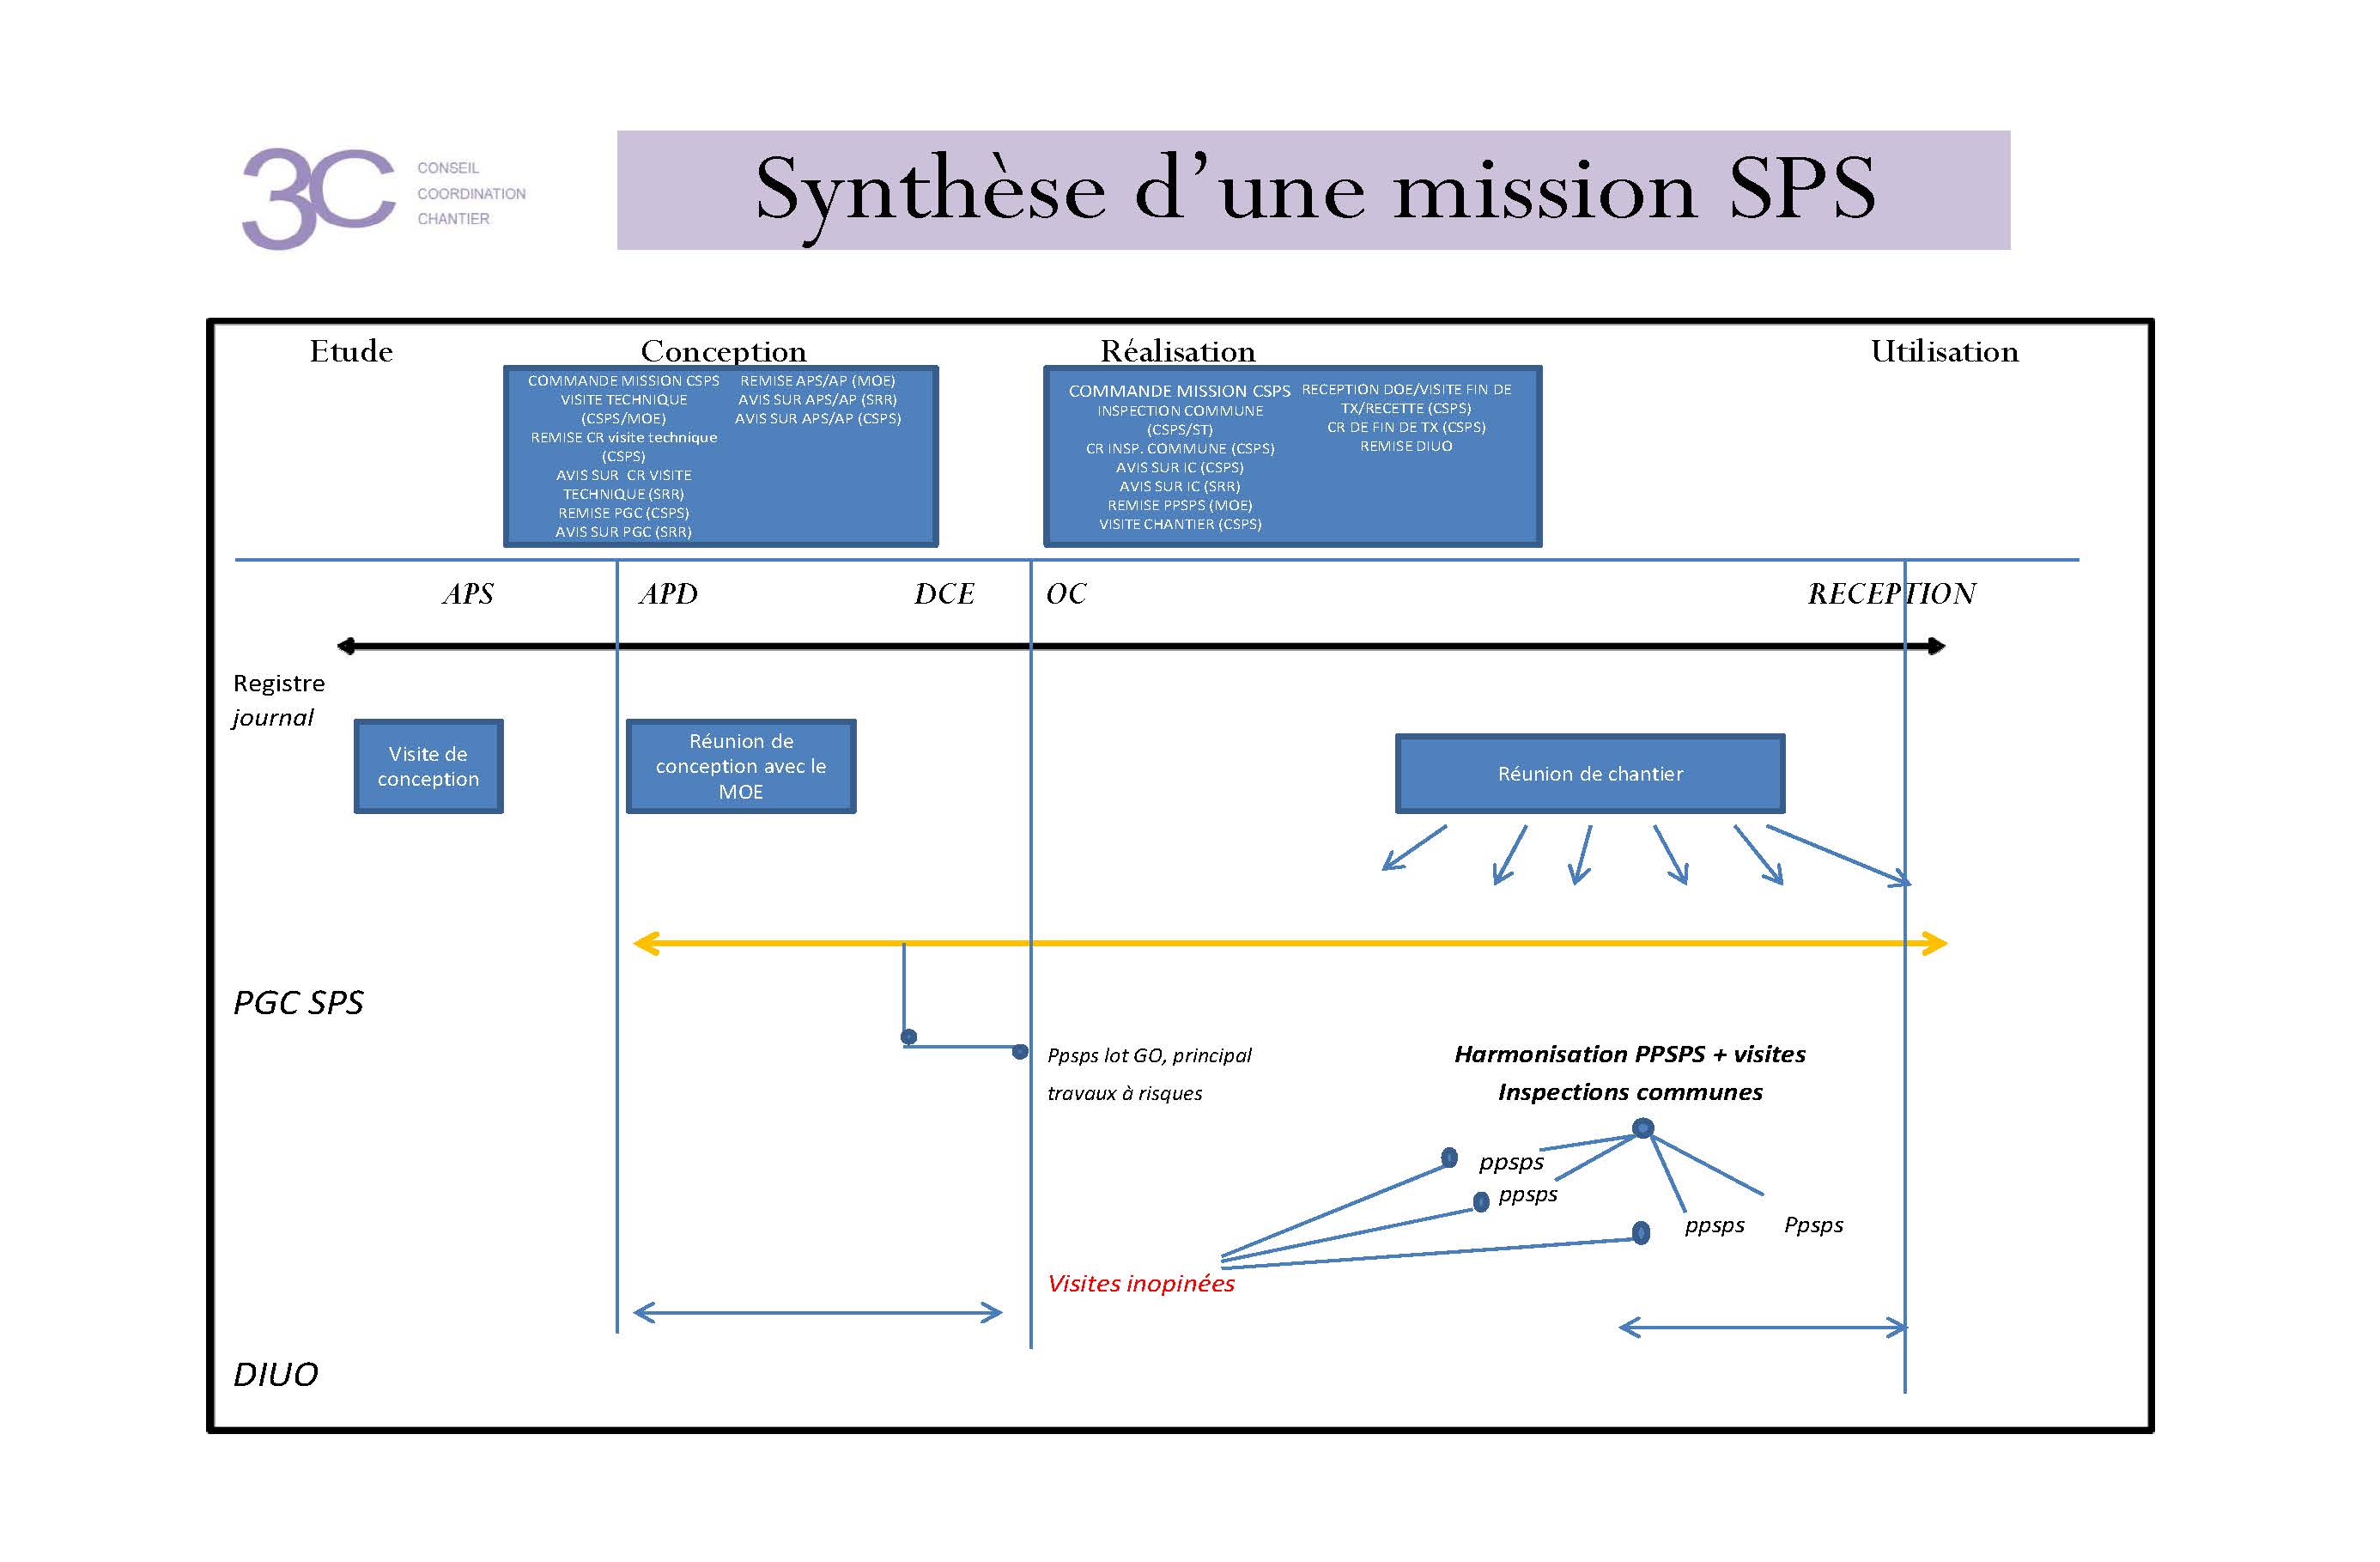 coordinationSPS-mission-sps-ile-de-la-reunion